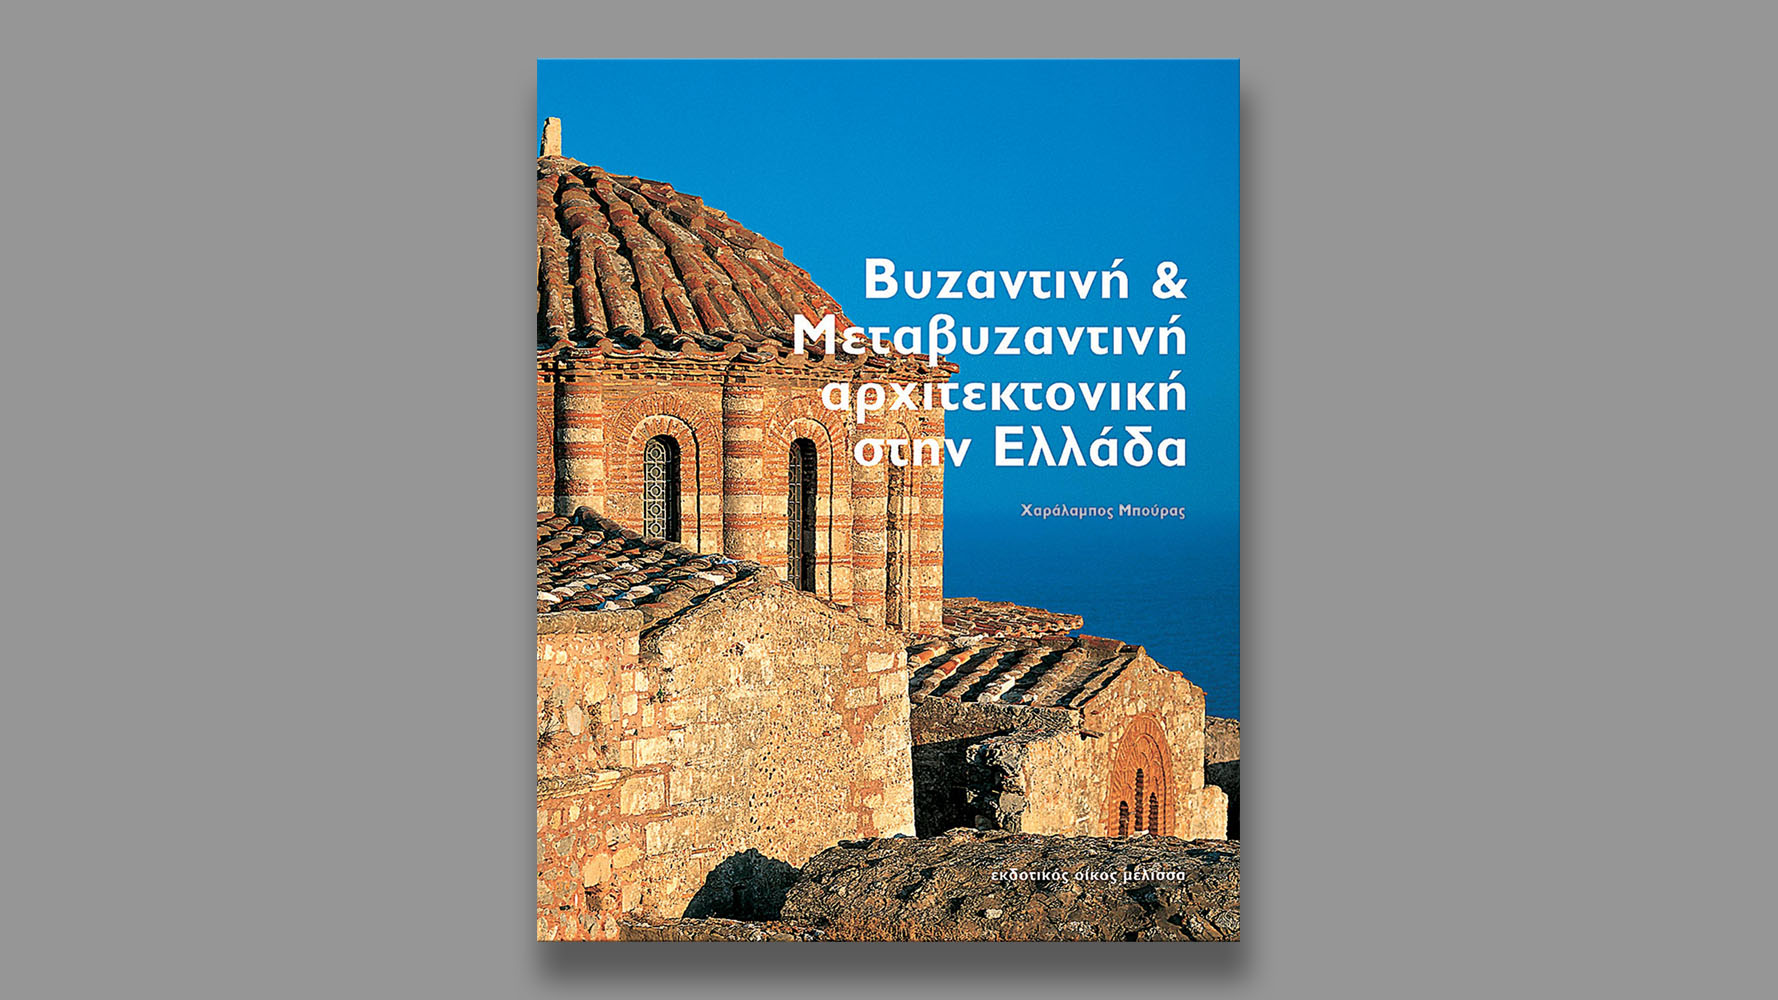 Βυζαντινή και Μεταβυζαντινή Αρχιτεκτονική στην Ελλάδα, Εκδόσεις Μέλισσα, 2001